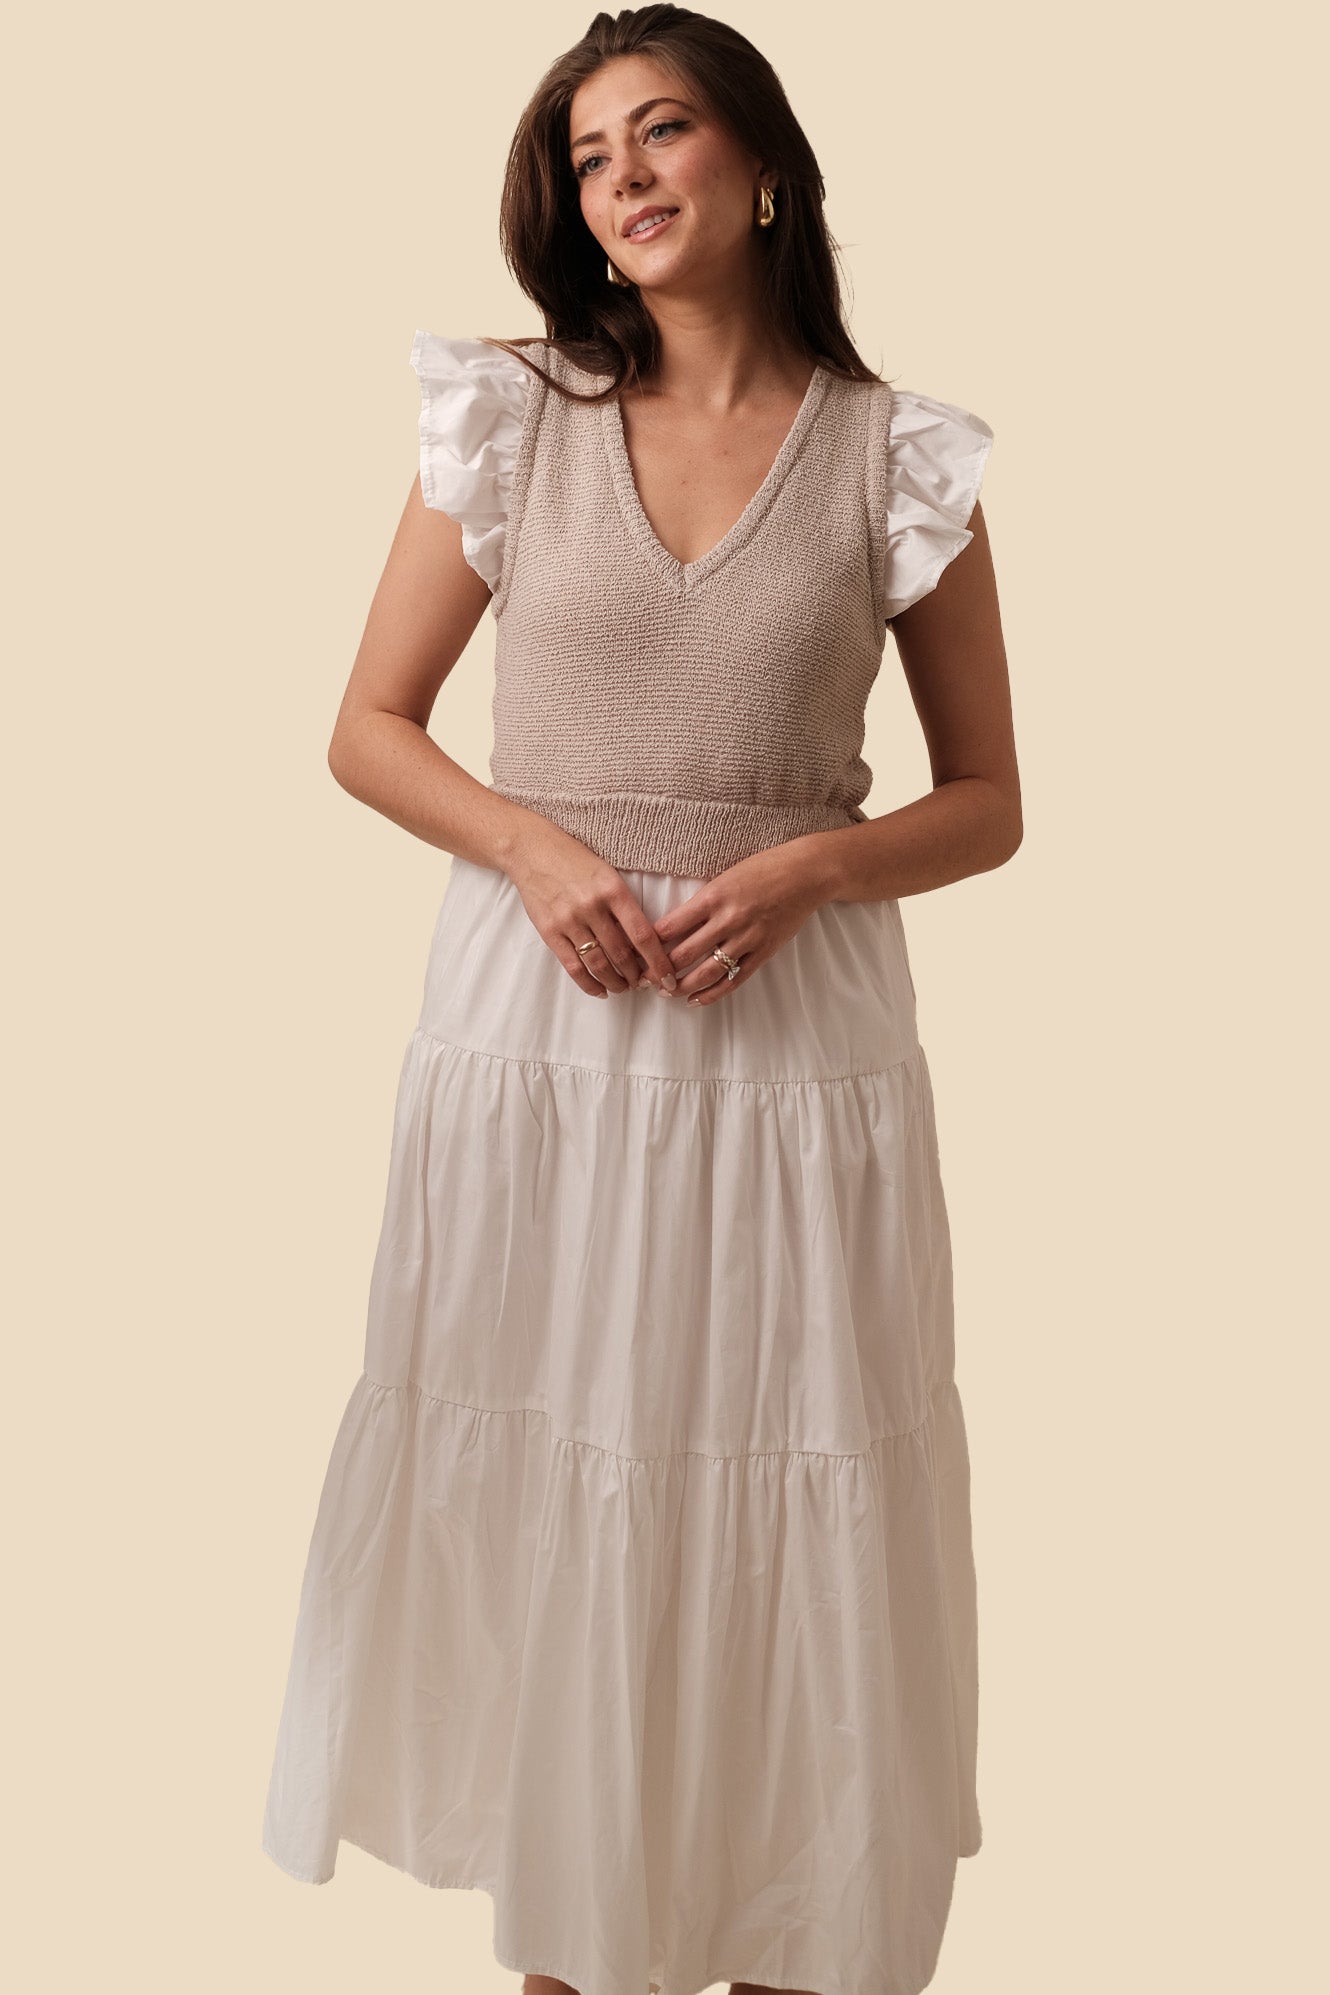 Sofie the Label Clover Flutter Sleeve Midi Dress (White)